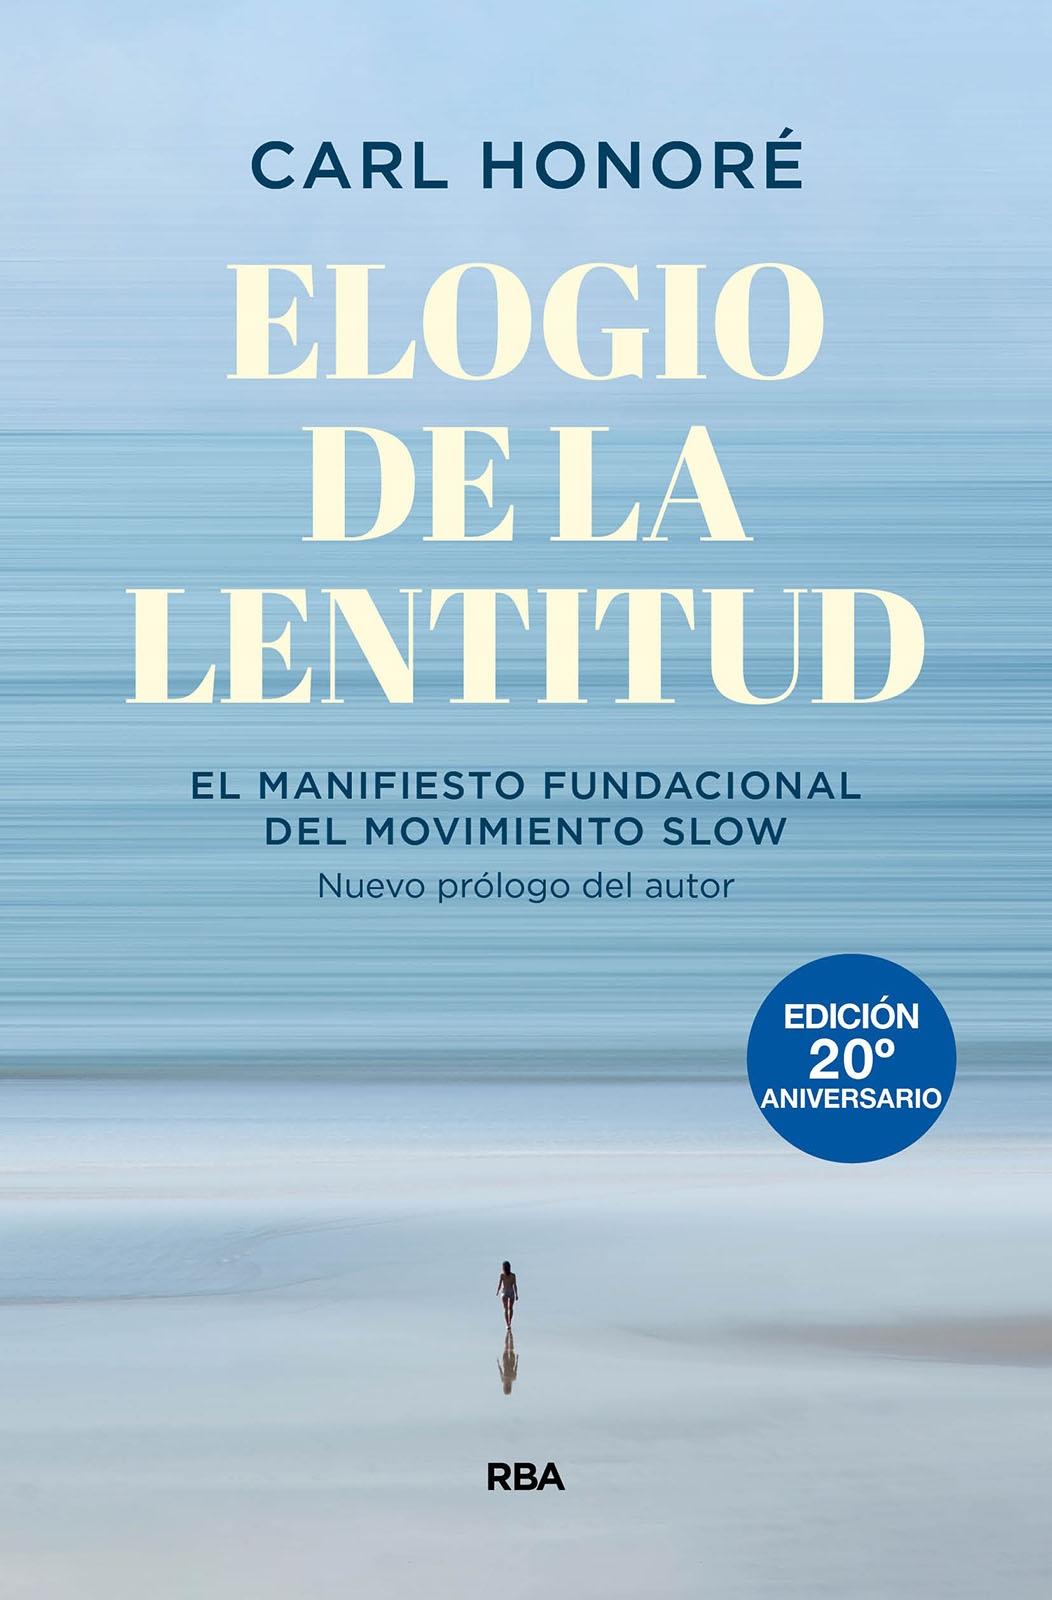 Elogio de la lentitud (Edición 20º aniversario) "El manifiesto fundacional del movimiento slow"